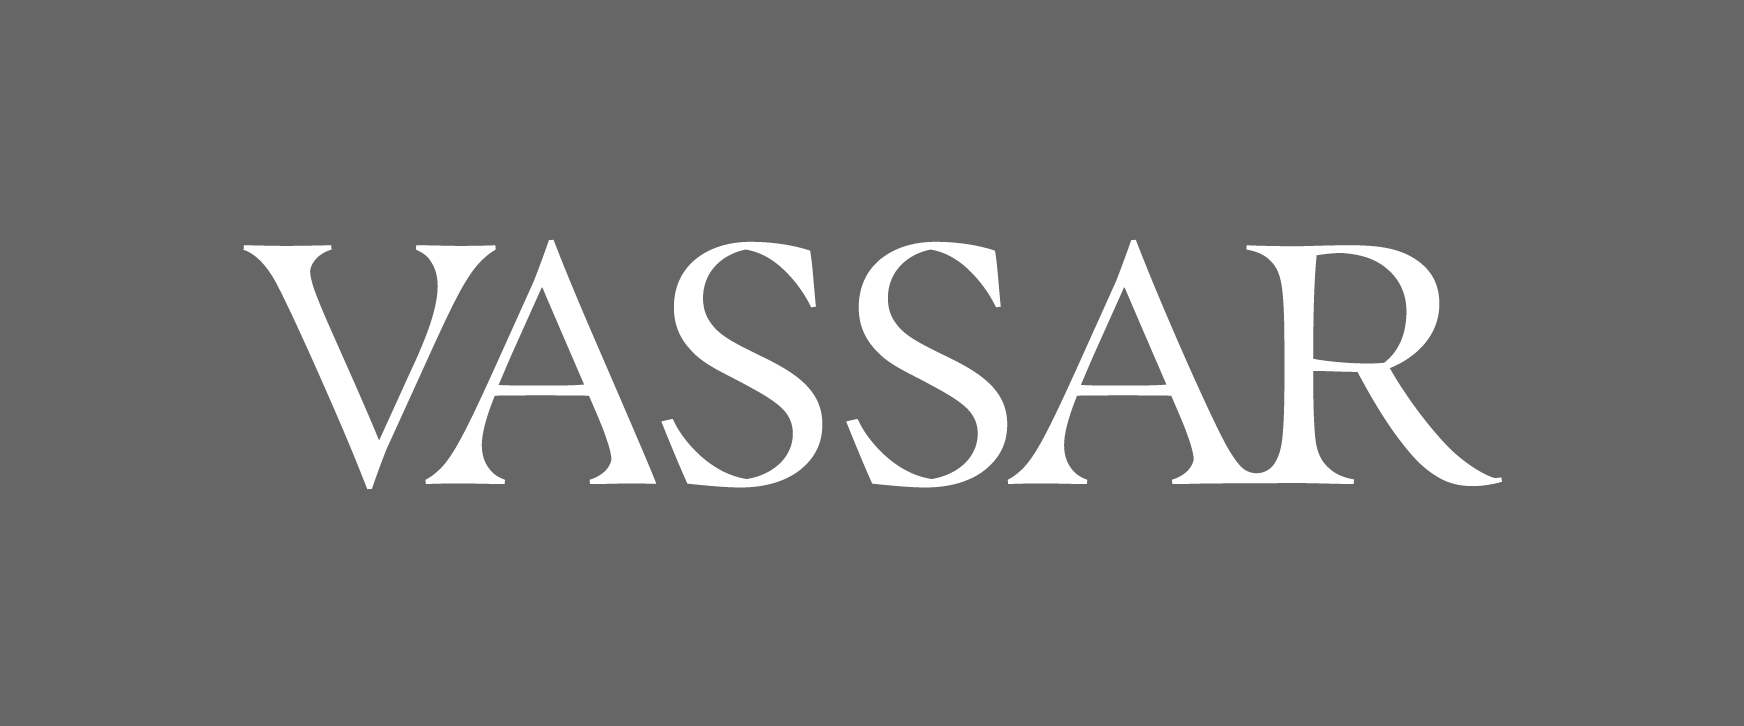 Vassar Wordmark with white text on a dark grey background